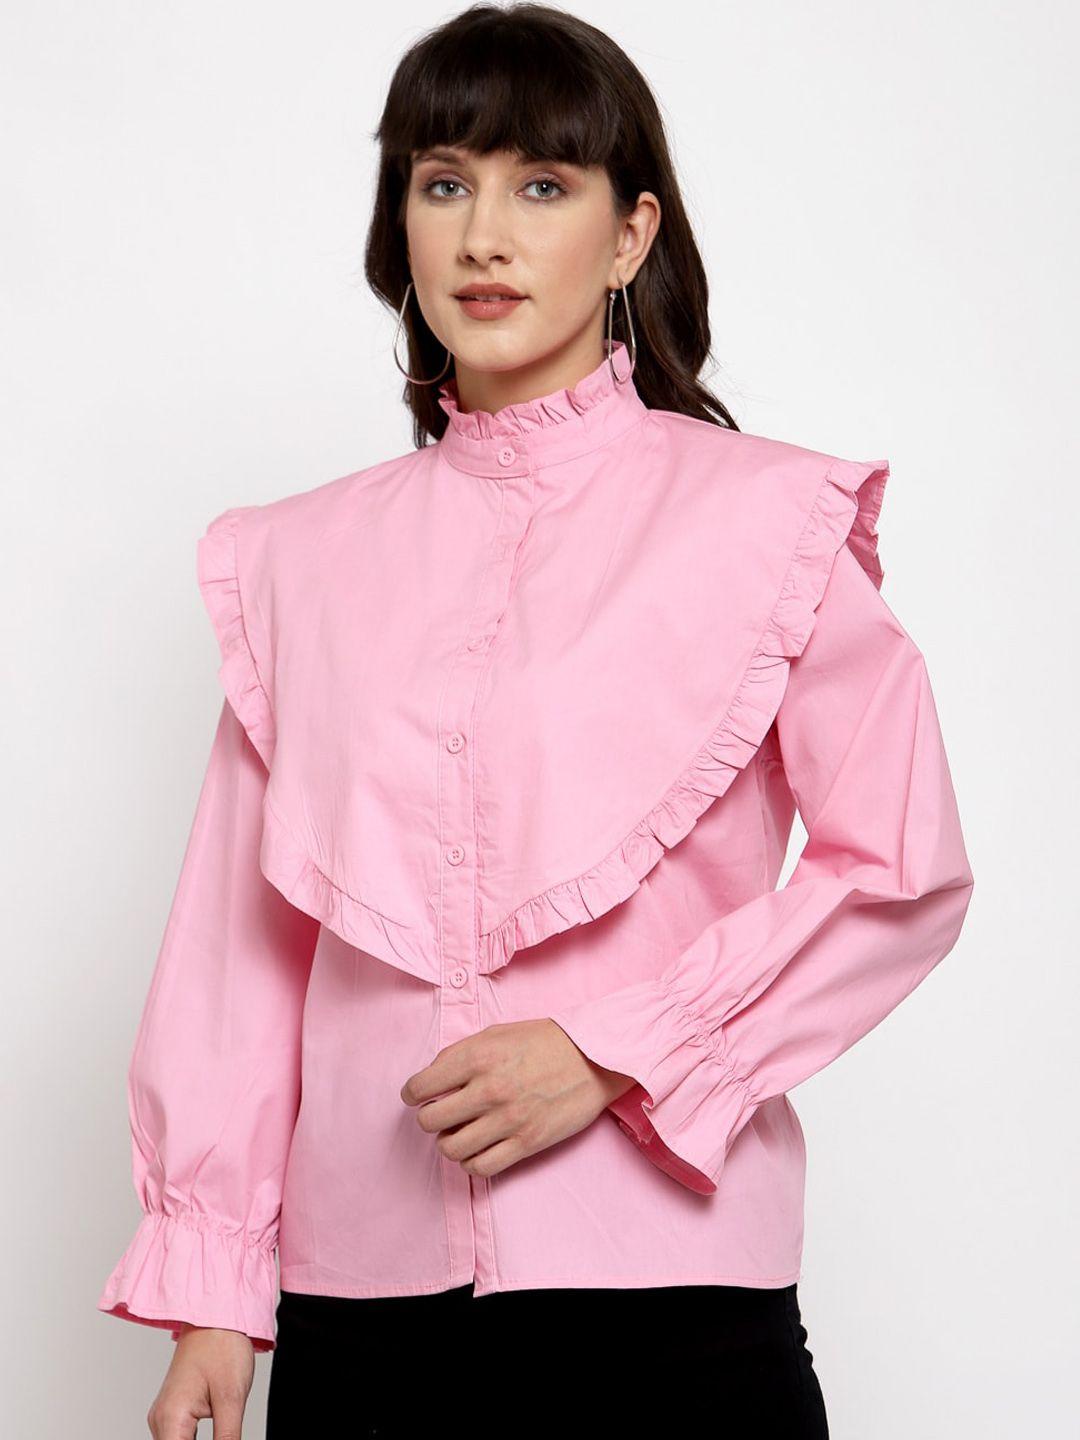 iki chic pink bishop sleeves layered regular top